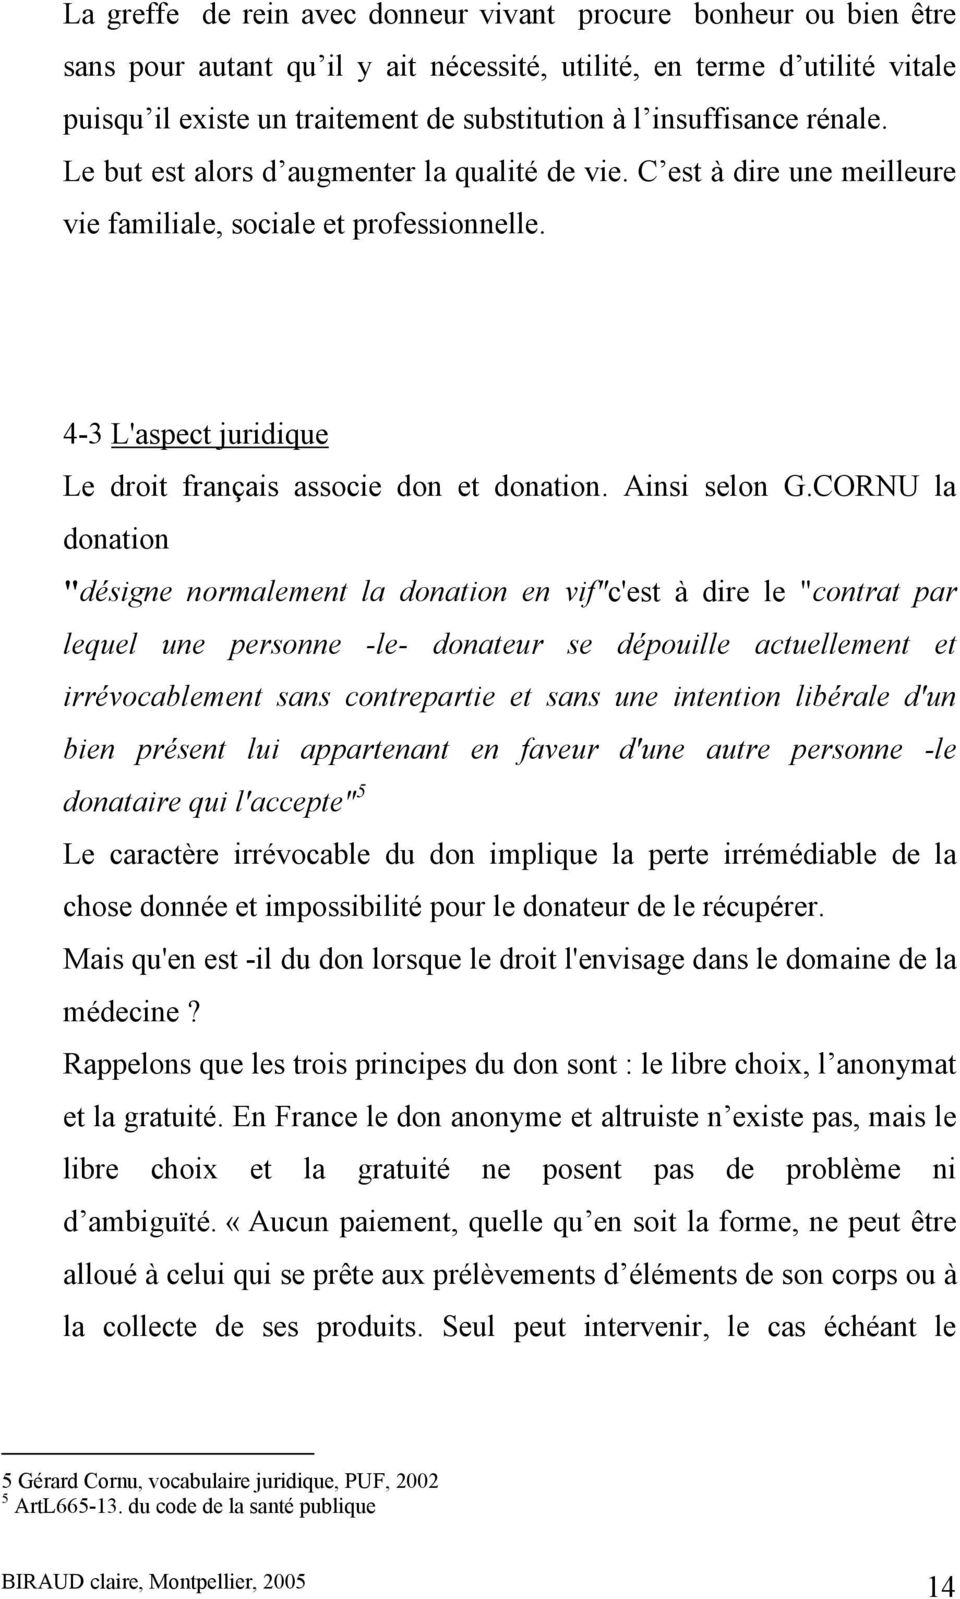 4-3 L'aspect juridique Le droit français associe don et donation. Ainsi selon G.